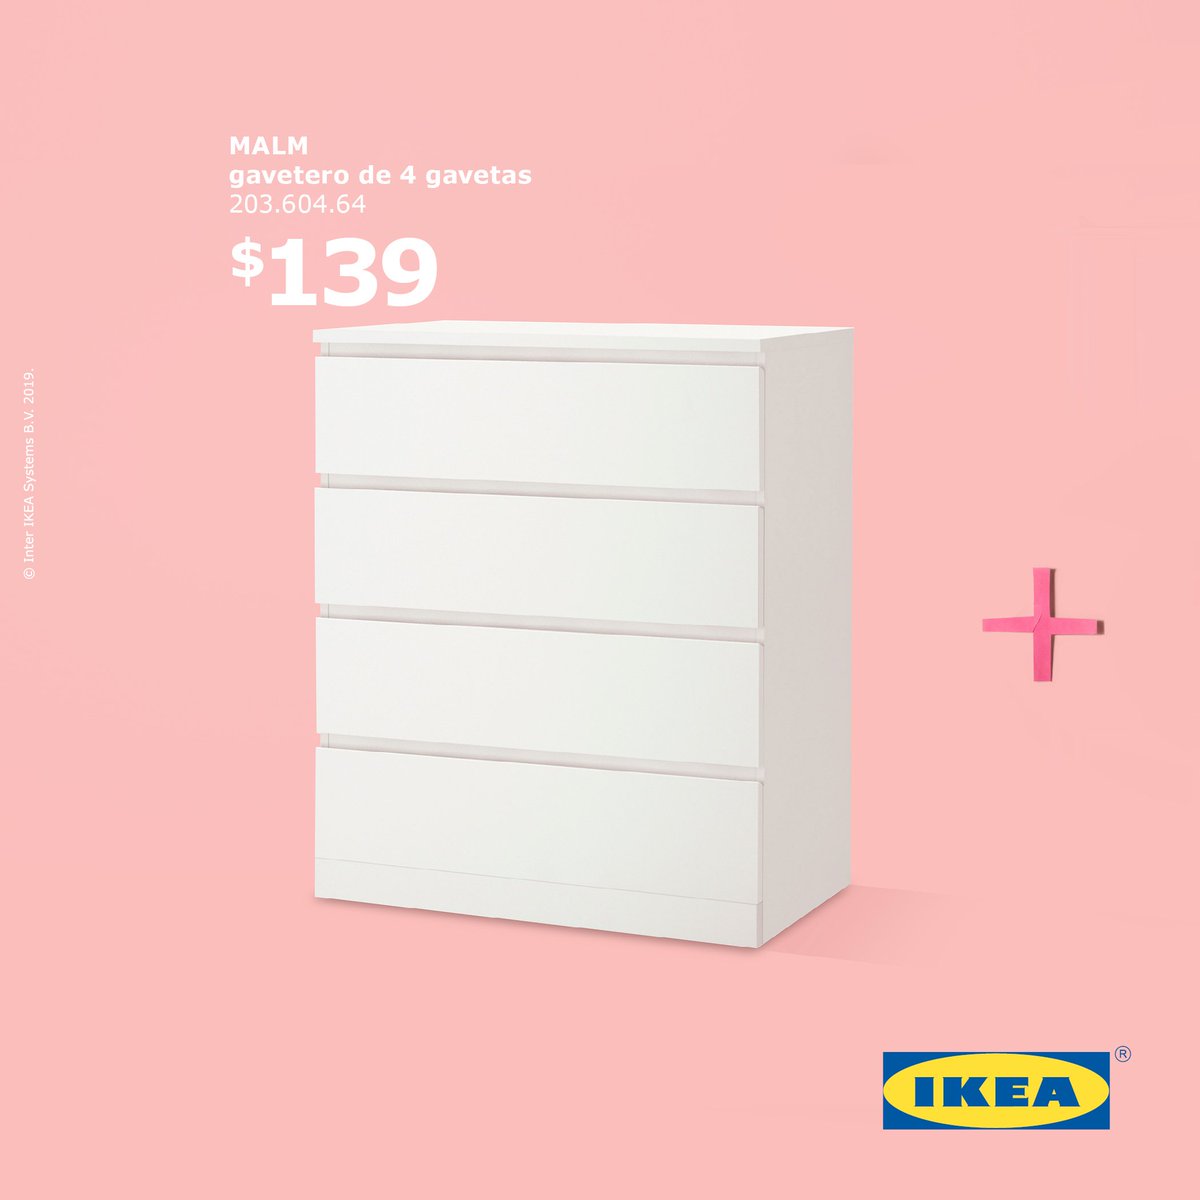 IKEA Puerto Rico - Cómodas